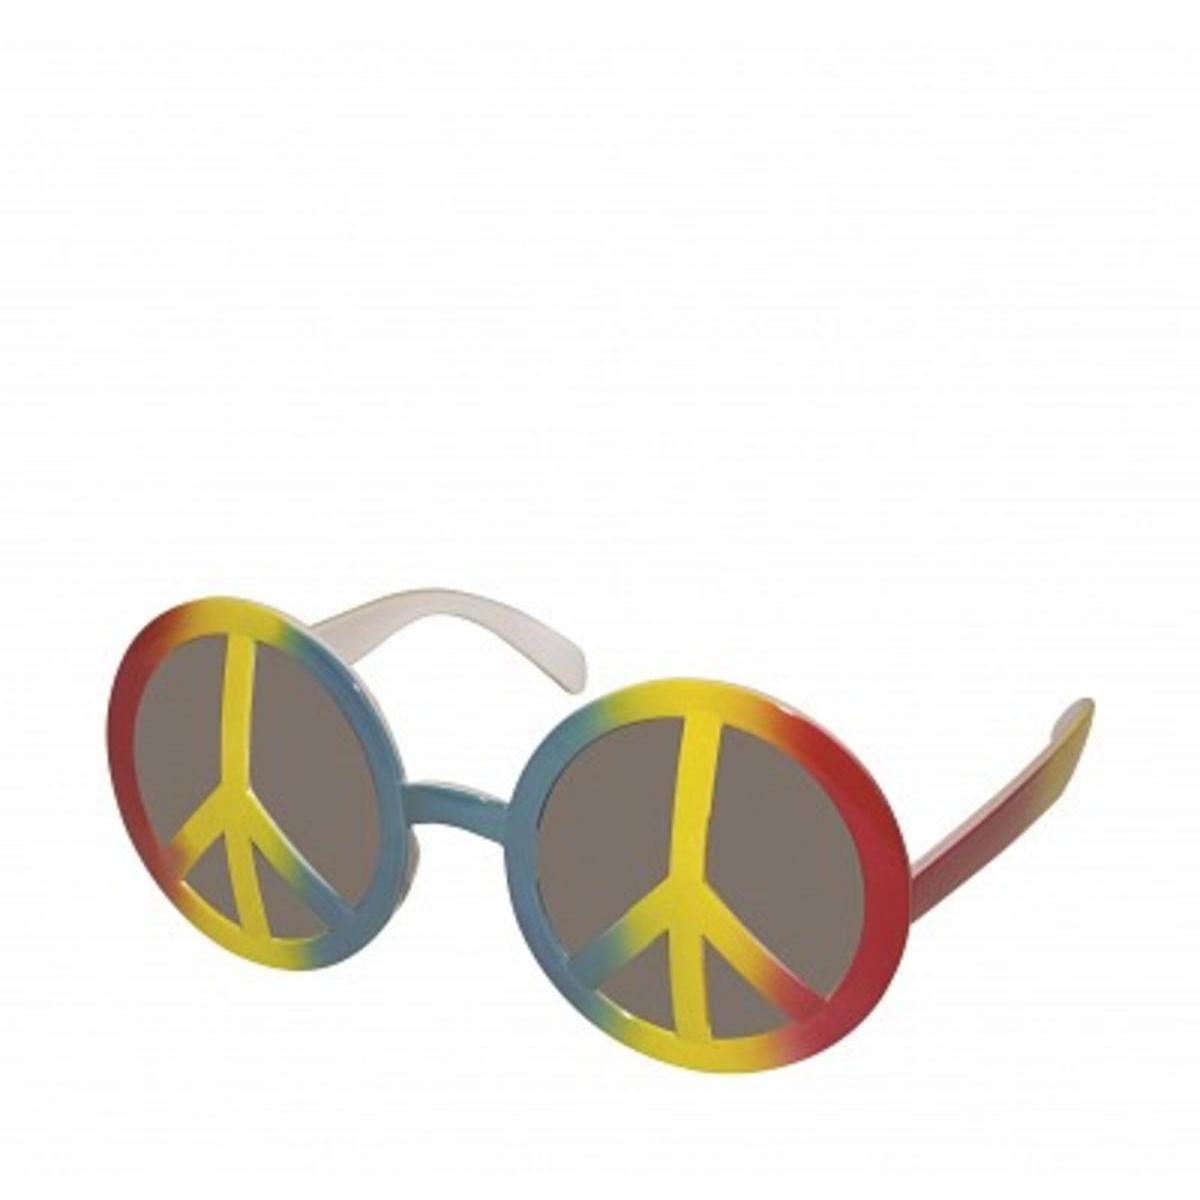 Lunettes Peace and Love en plastique - 14 x 6,5 cm - Multicolore